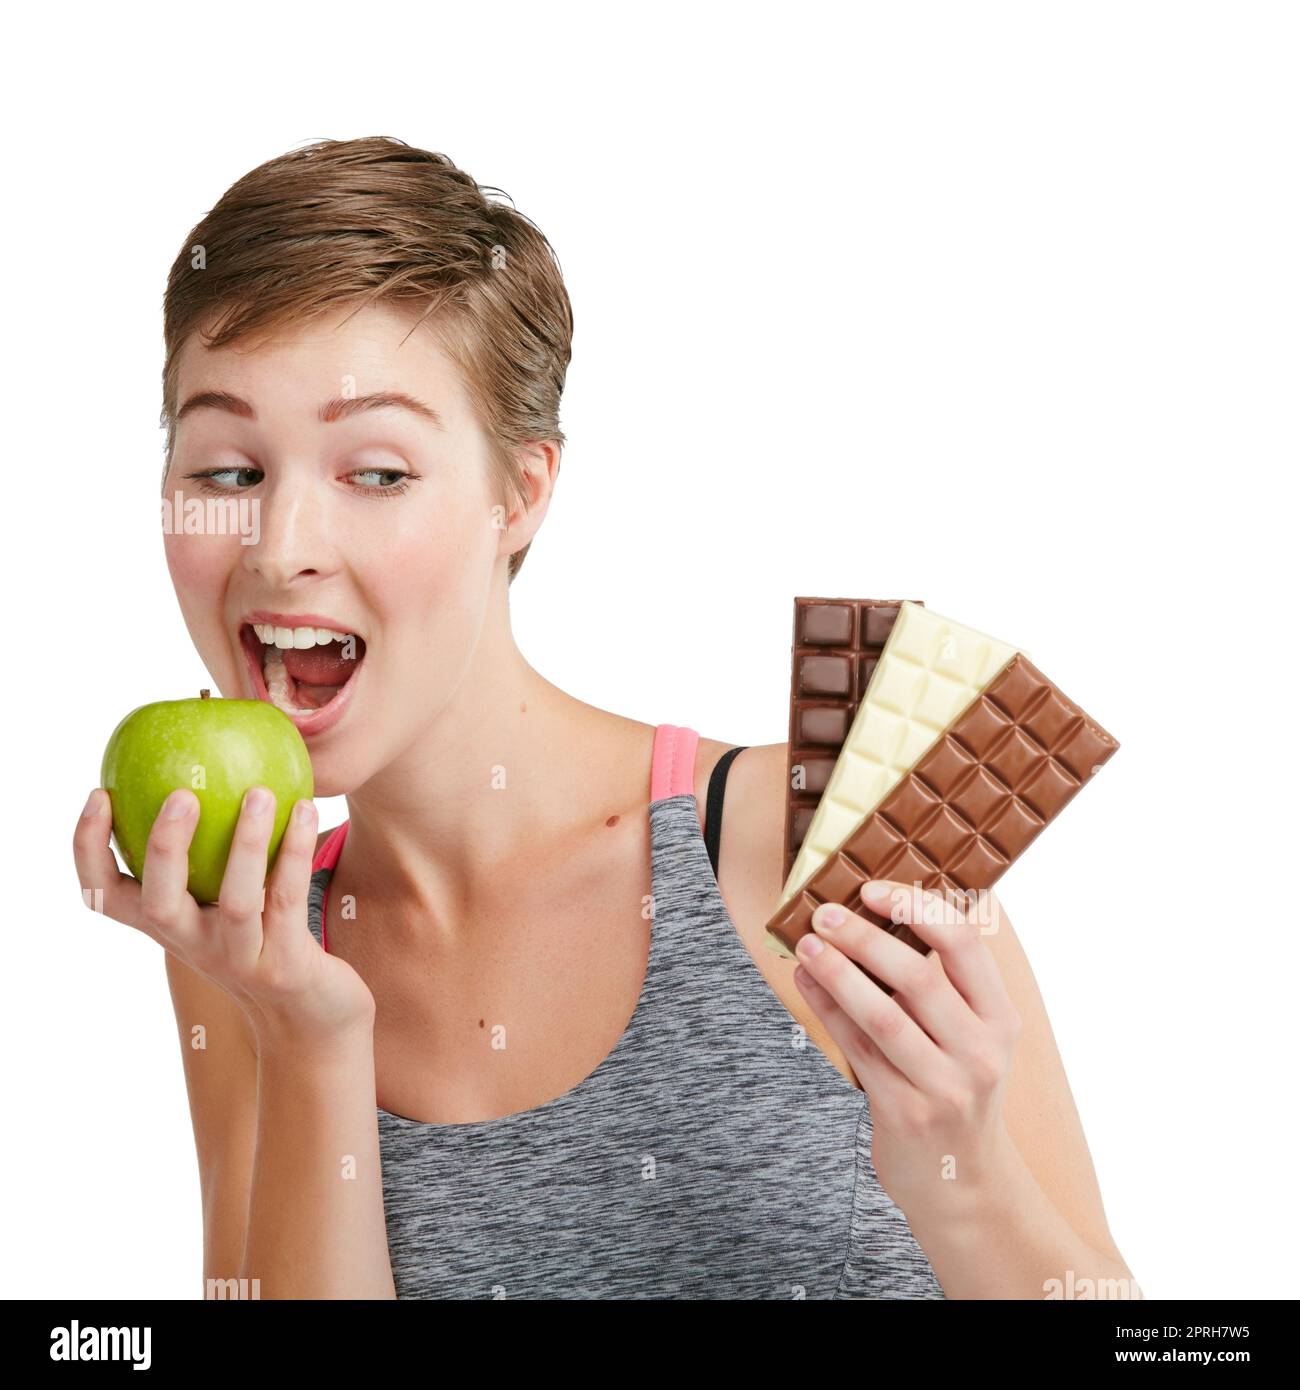 Ändere deine Meinung, verändere deinen Körper. Studio-Aufnahme einer jungen Frau, die sich für den Verzehr von Schokolade oder einem Apfel vor weißem Hintergrund entscheidet. Stockfoto